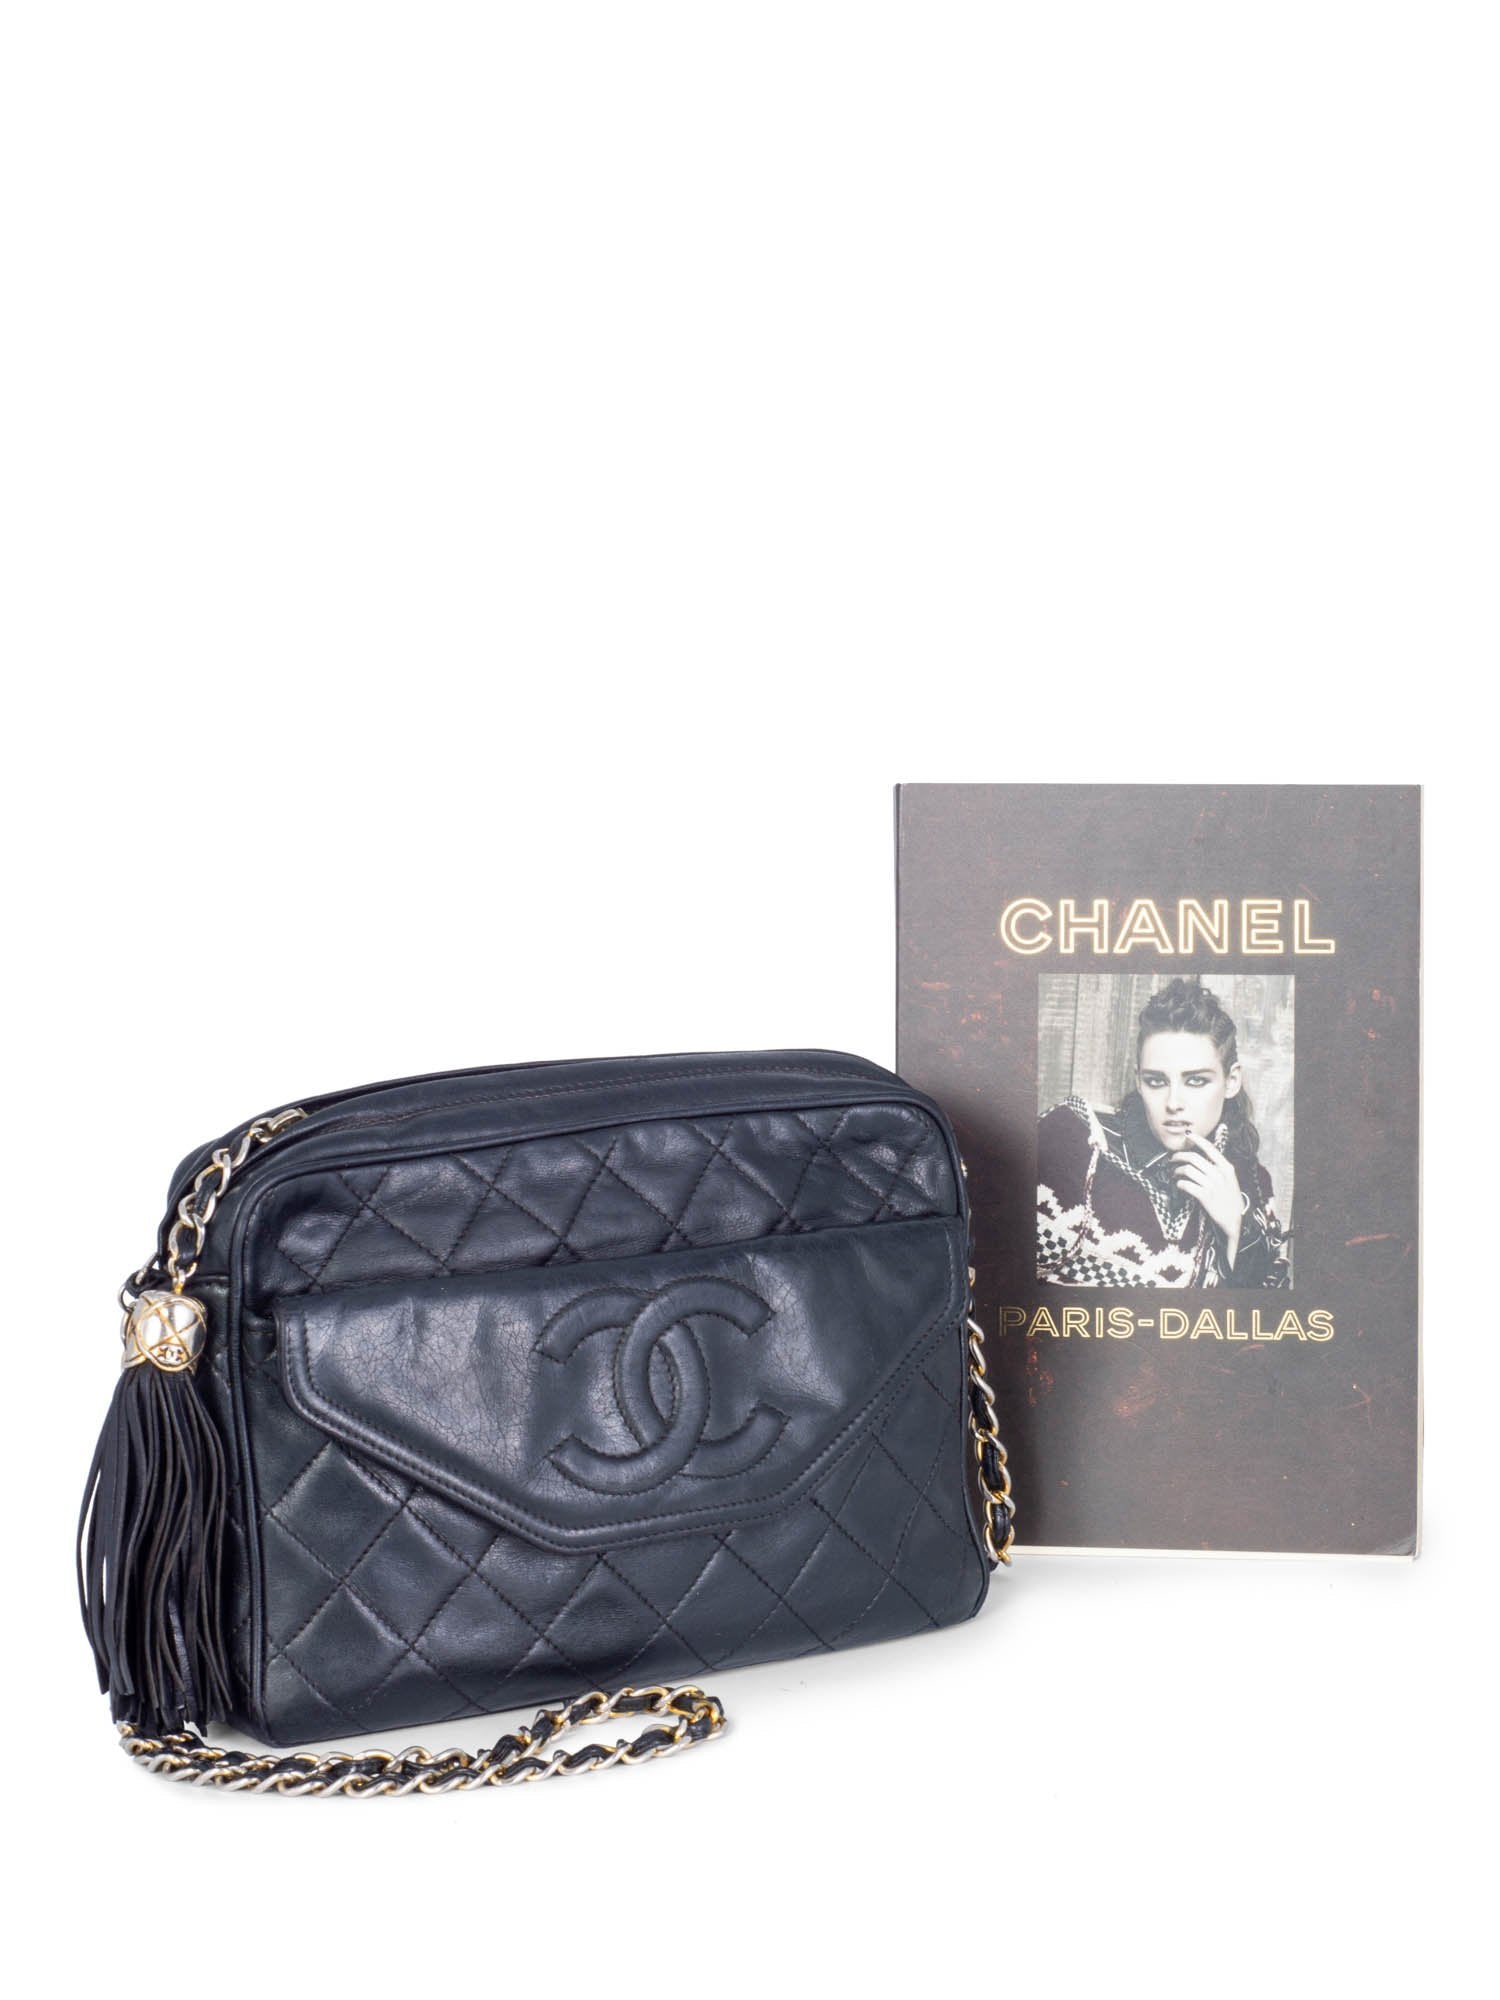 CHANEL Quilted Leather Tassel Camera Bag Black-designer resale